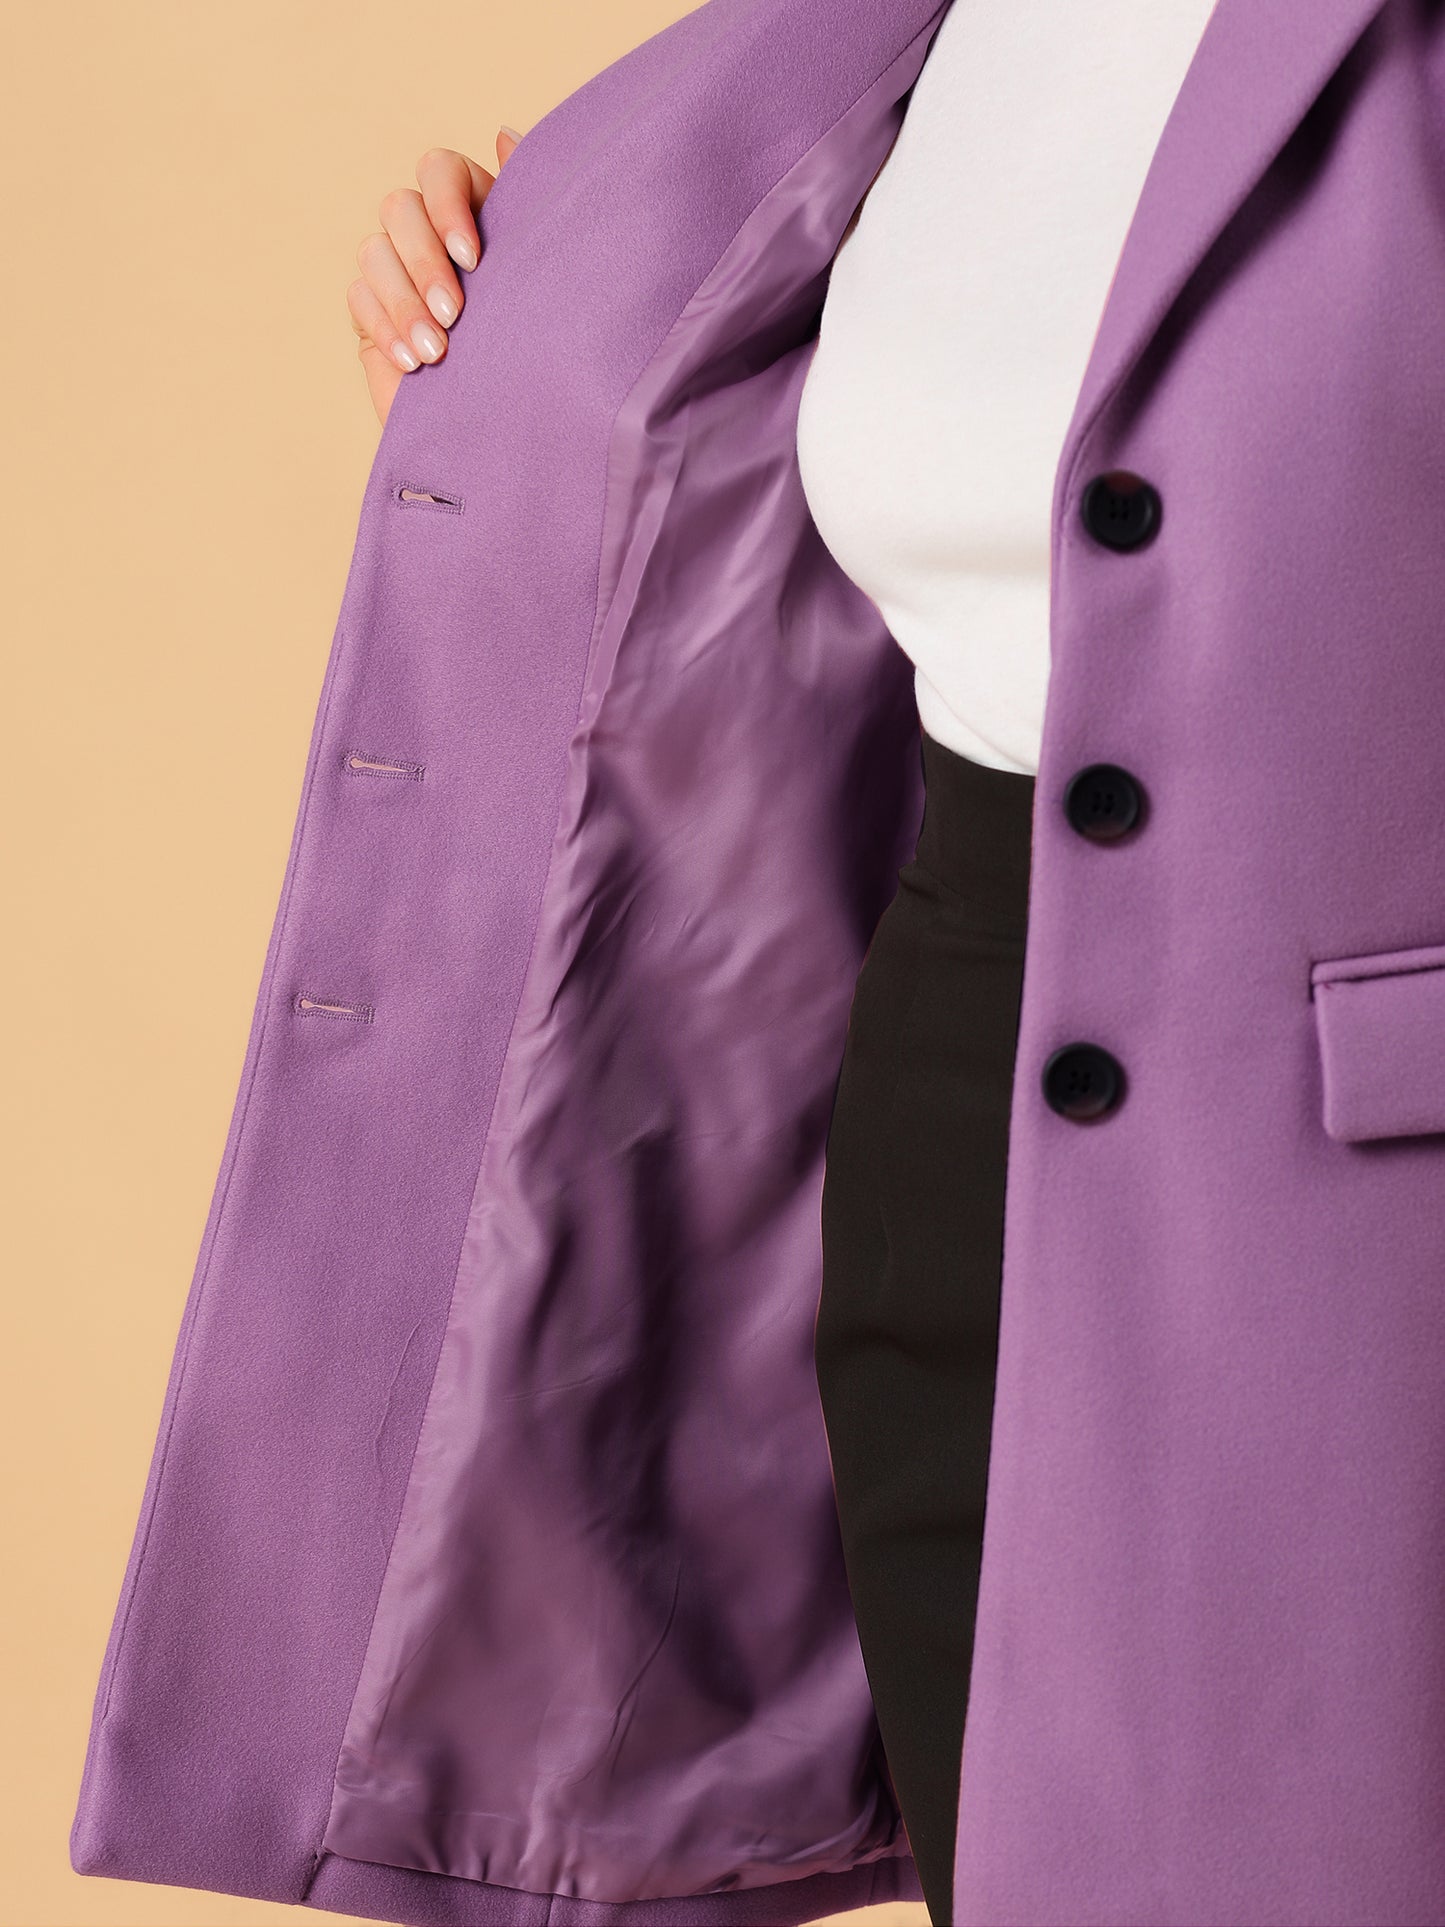 Allegra K Notched Lapel Single Breasted Outwear Winter Coat Light Purple